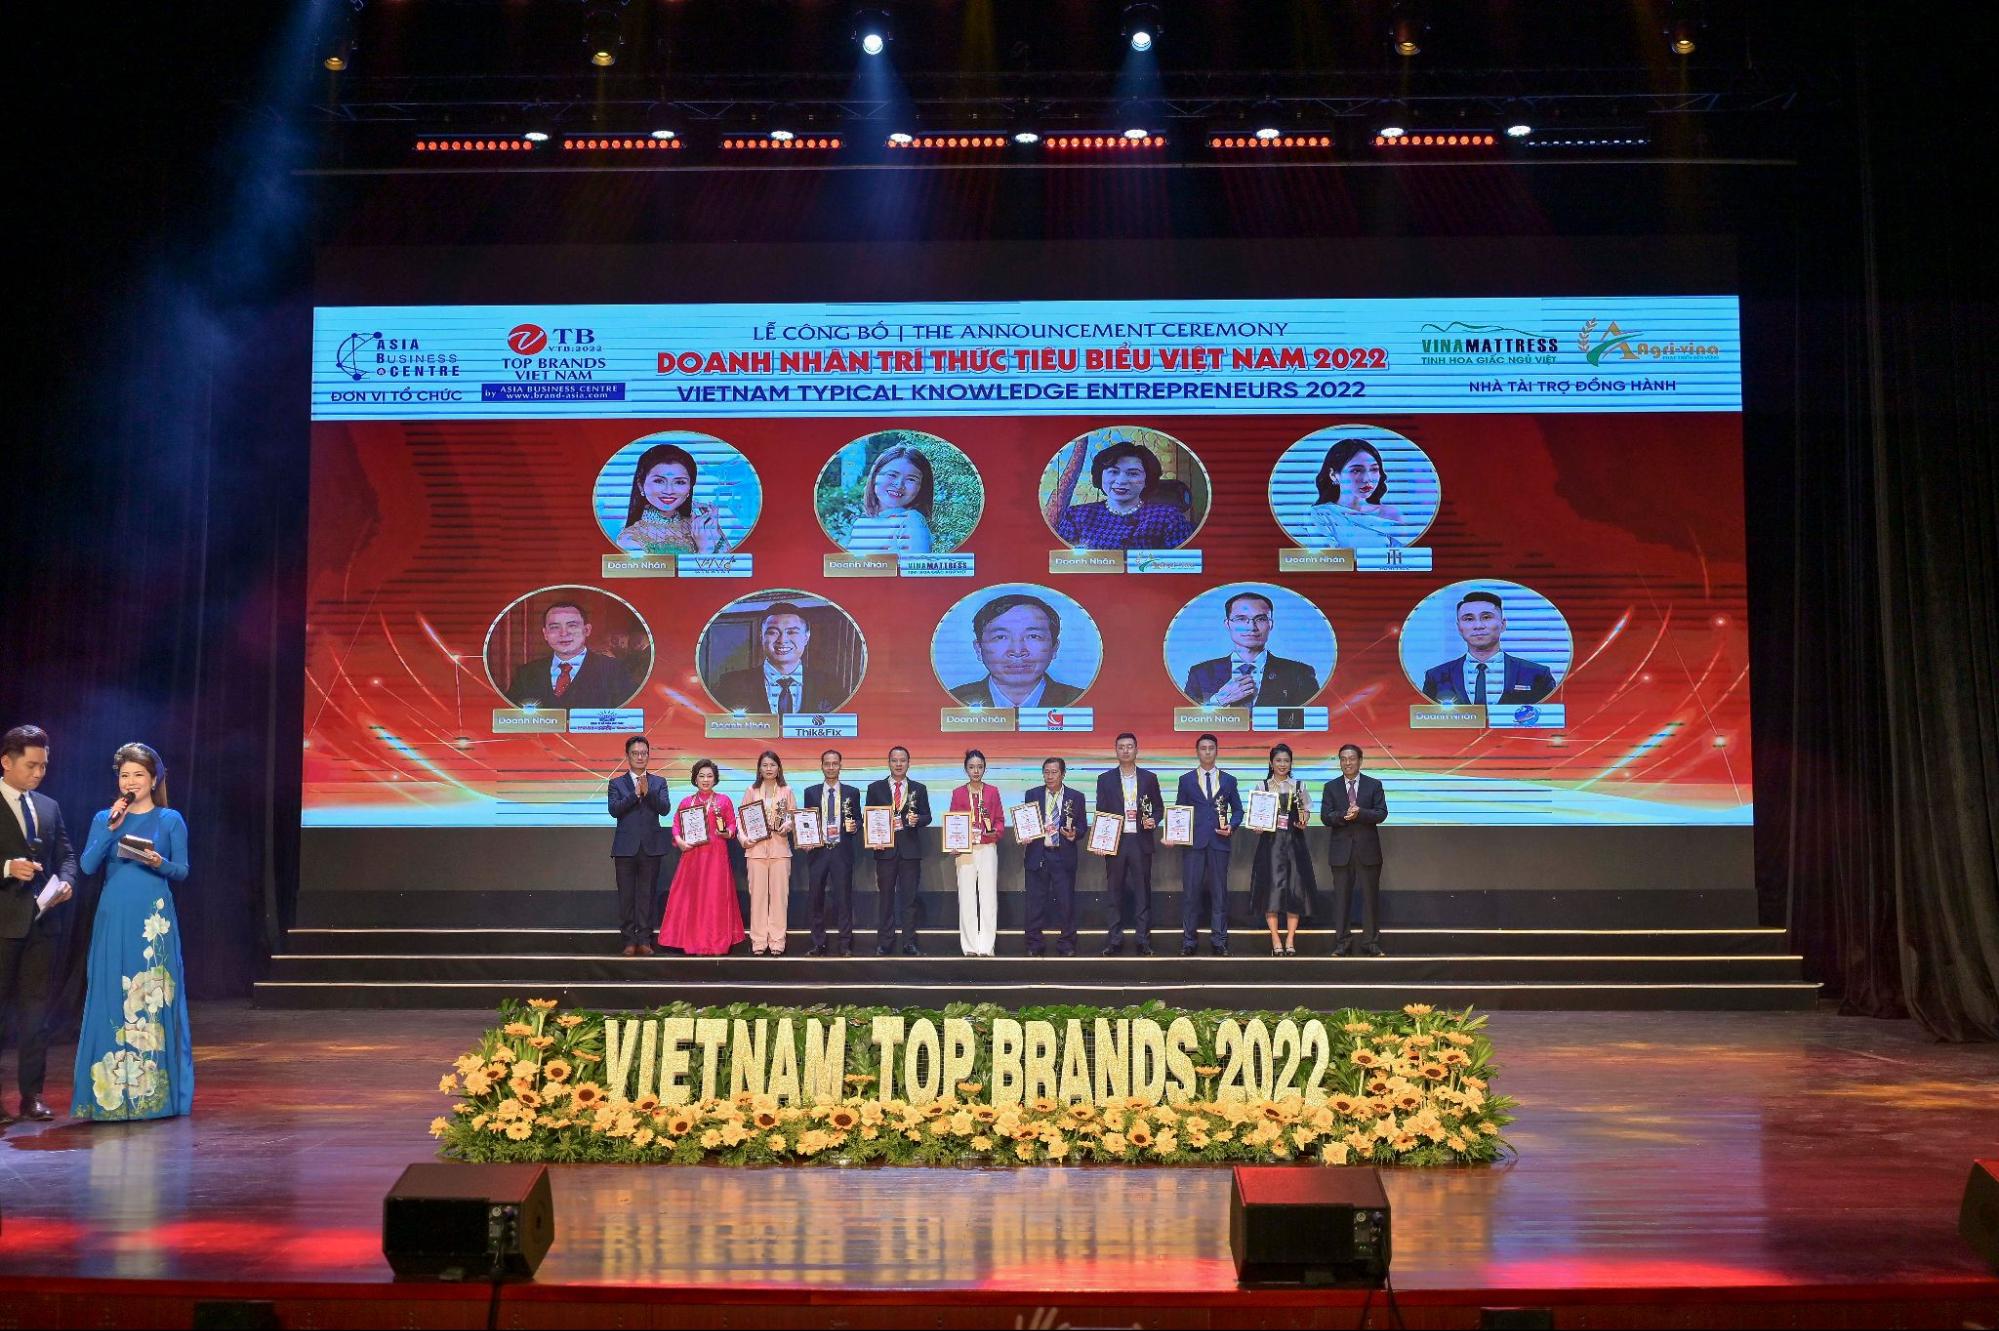 Giải thưởng "Doanh nhân trí thức tiêu biểu năm 2022" đã được trao cho Bà Nguyễn Hương Ly.